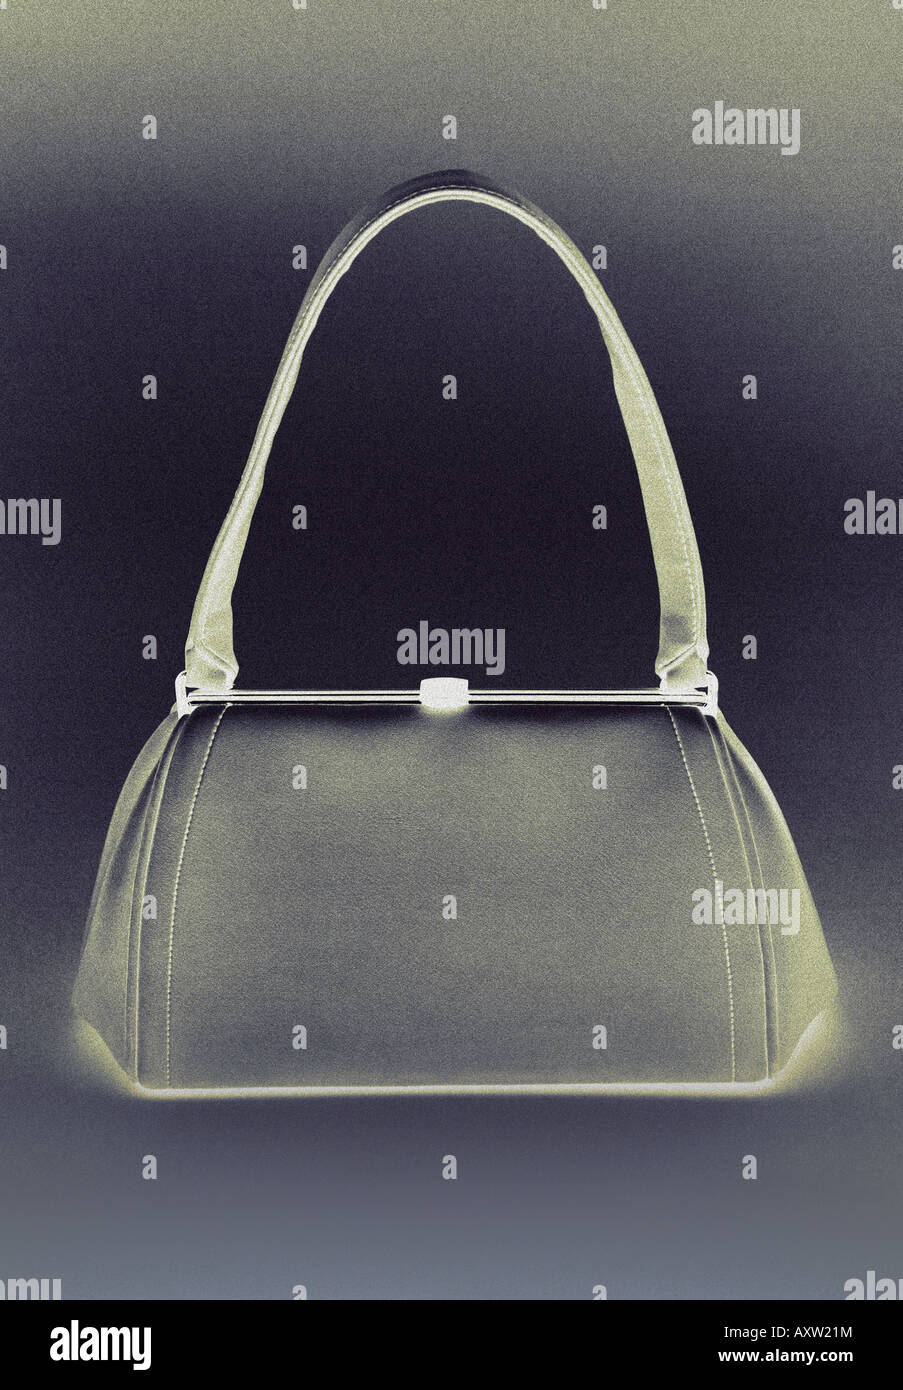 X ray image of a handbag Stock Photo